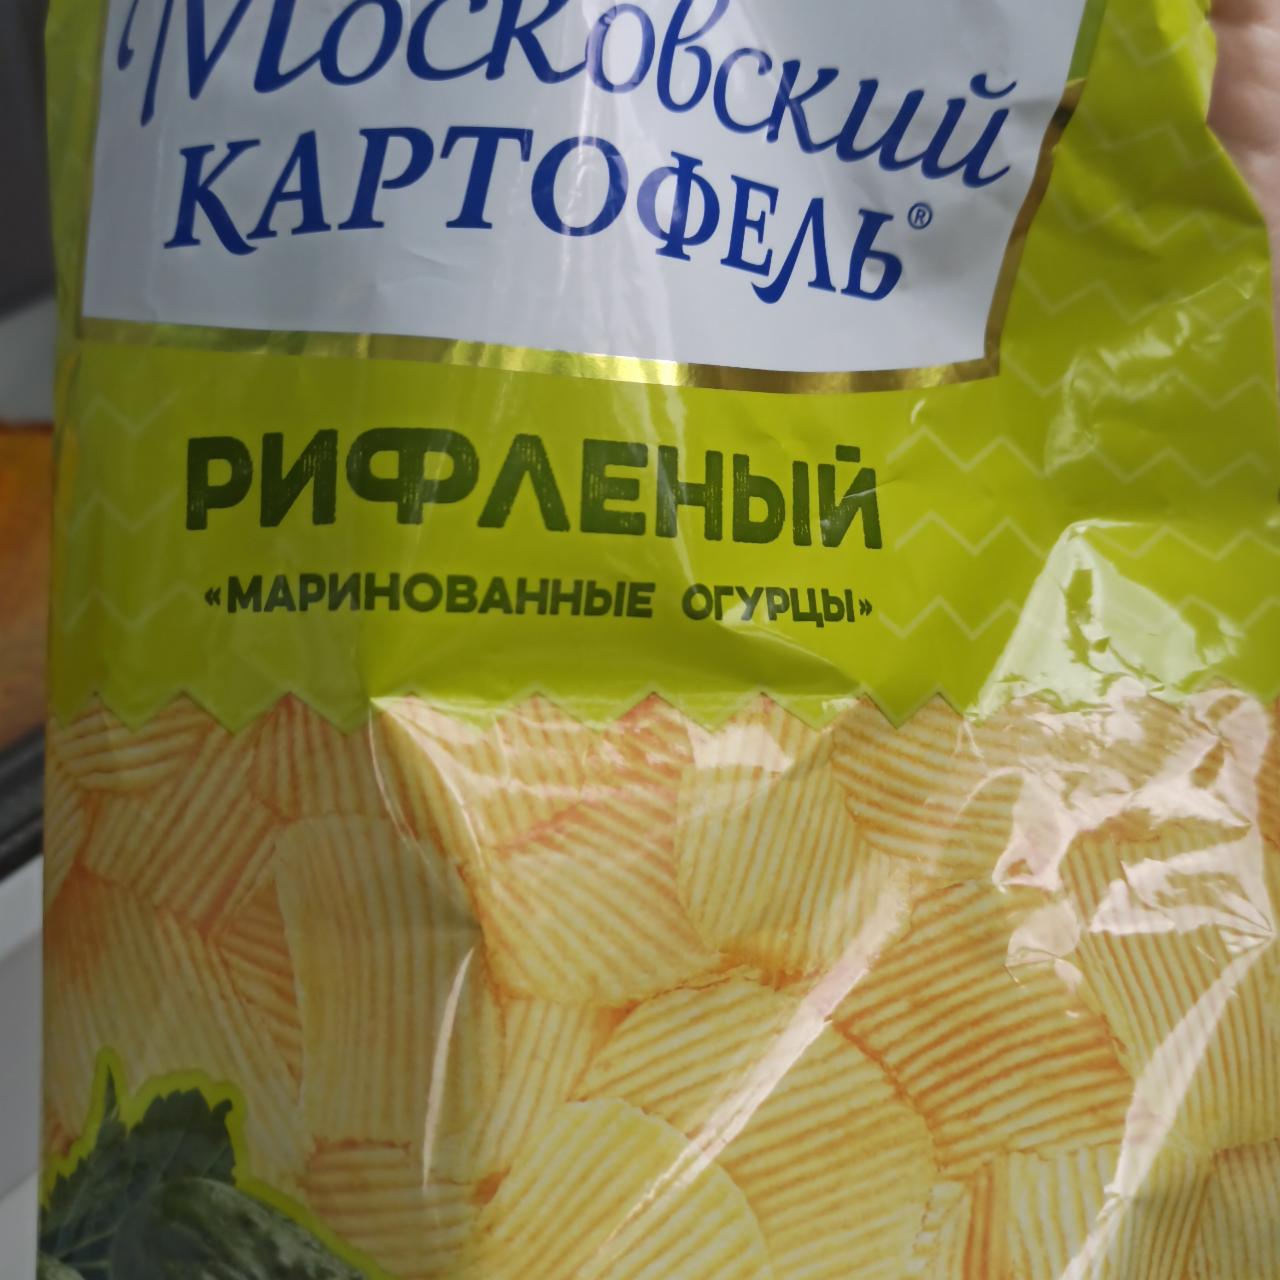 Фото - Чипсы маринованные огурцы Московский картофель